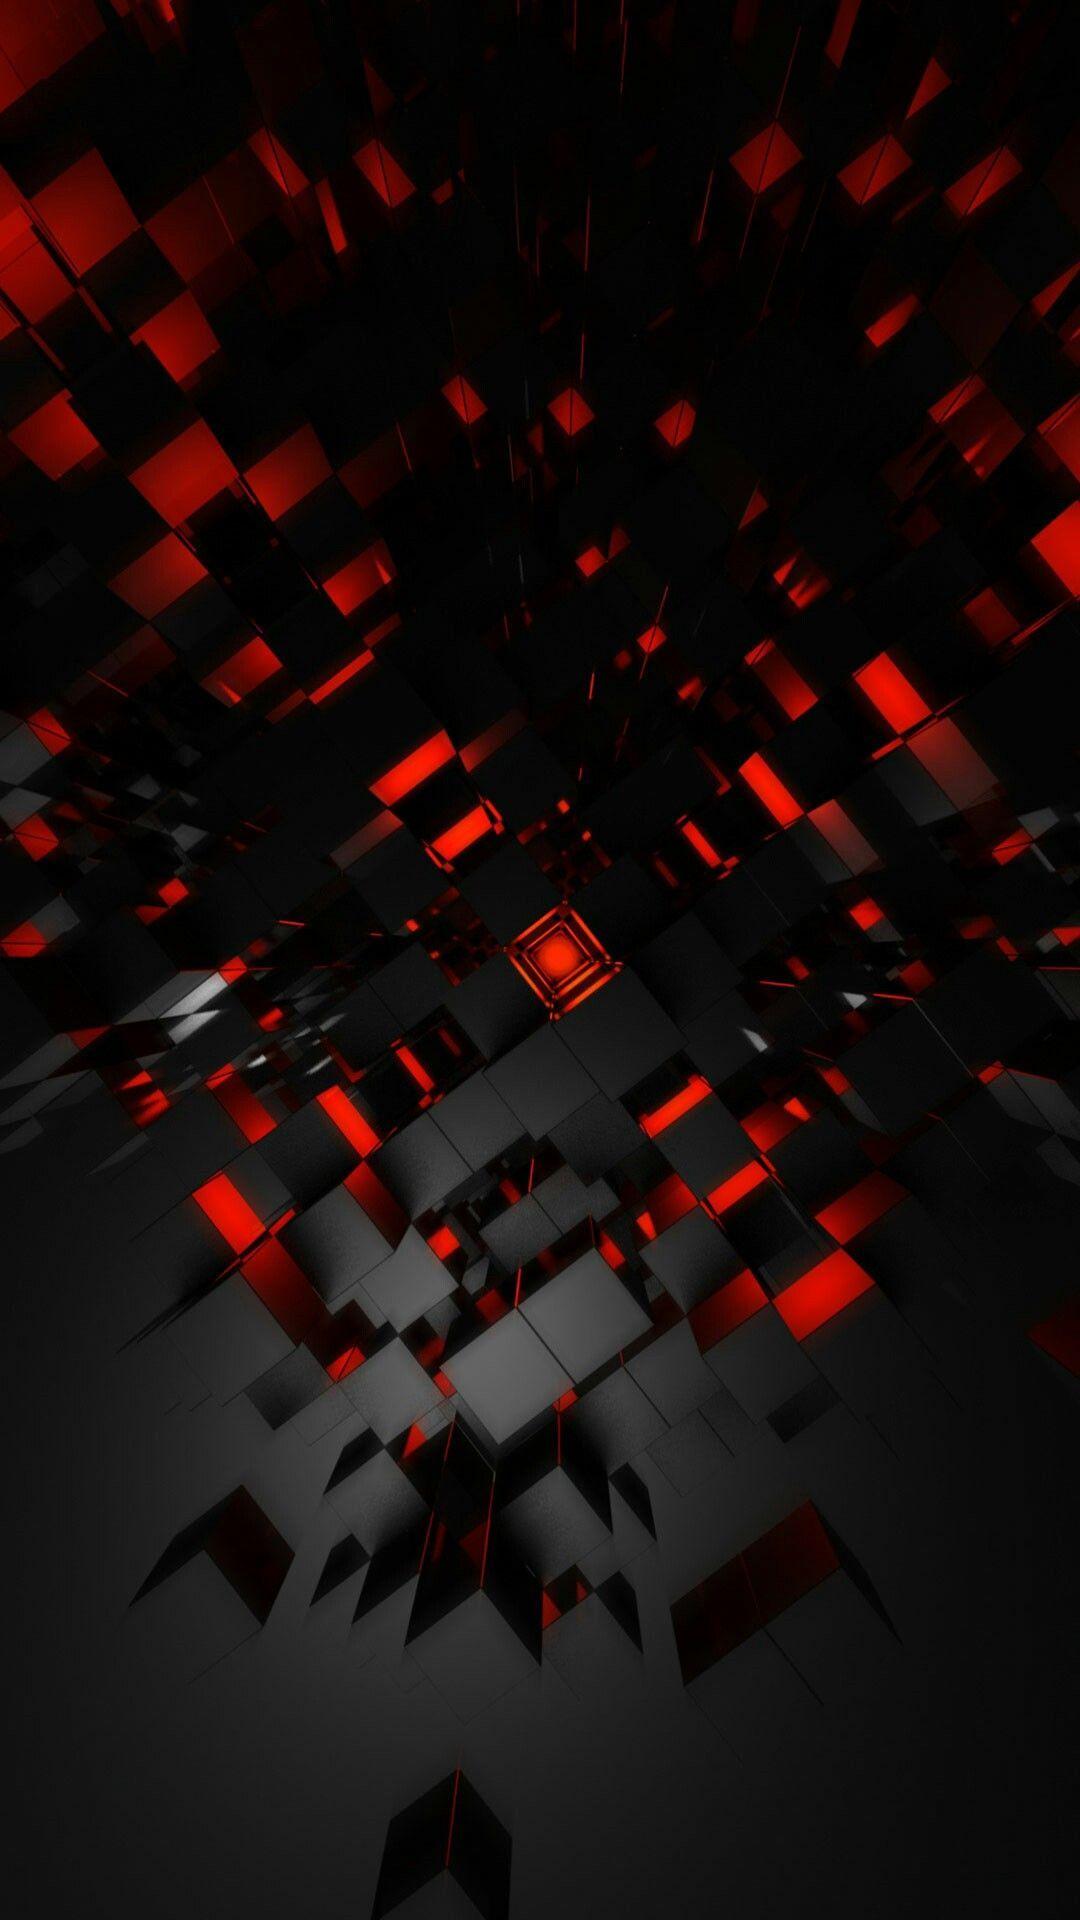 red black. abstract. Tło czarne z czerwonym / Background black